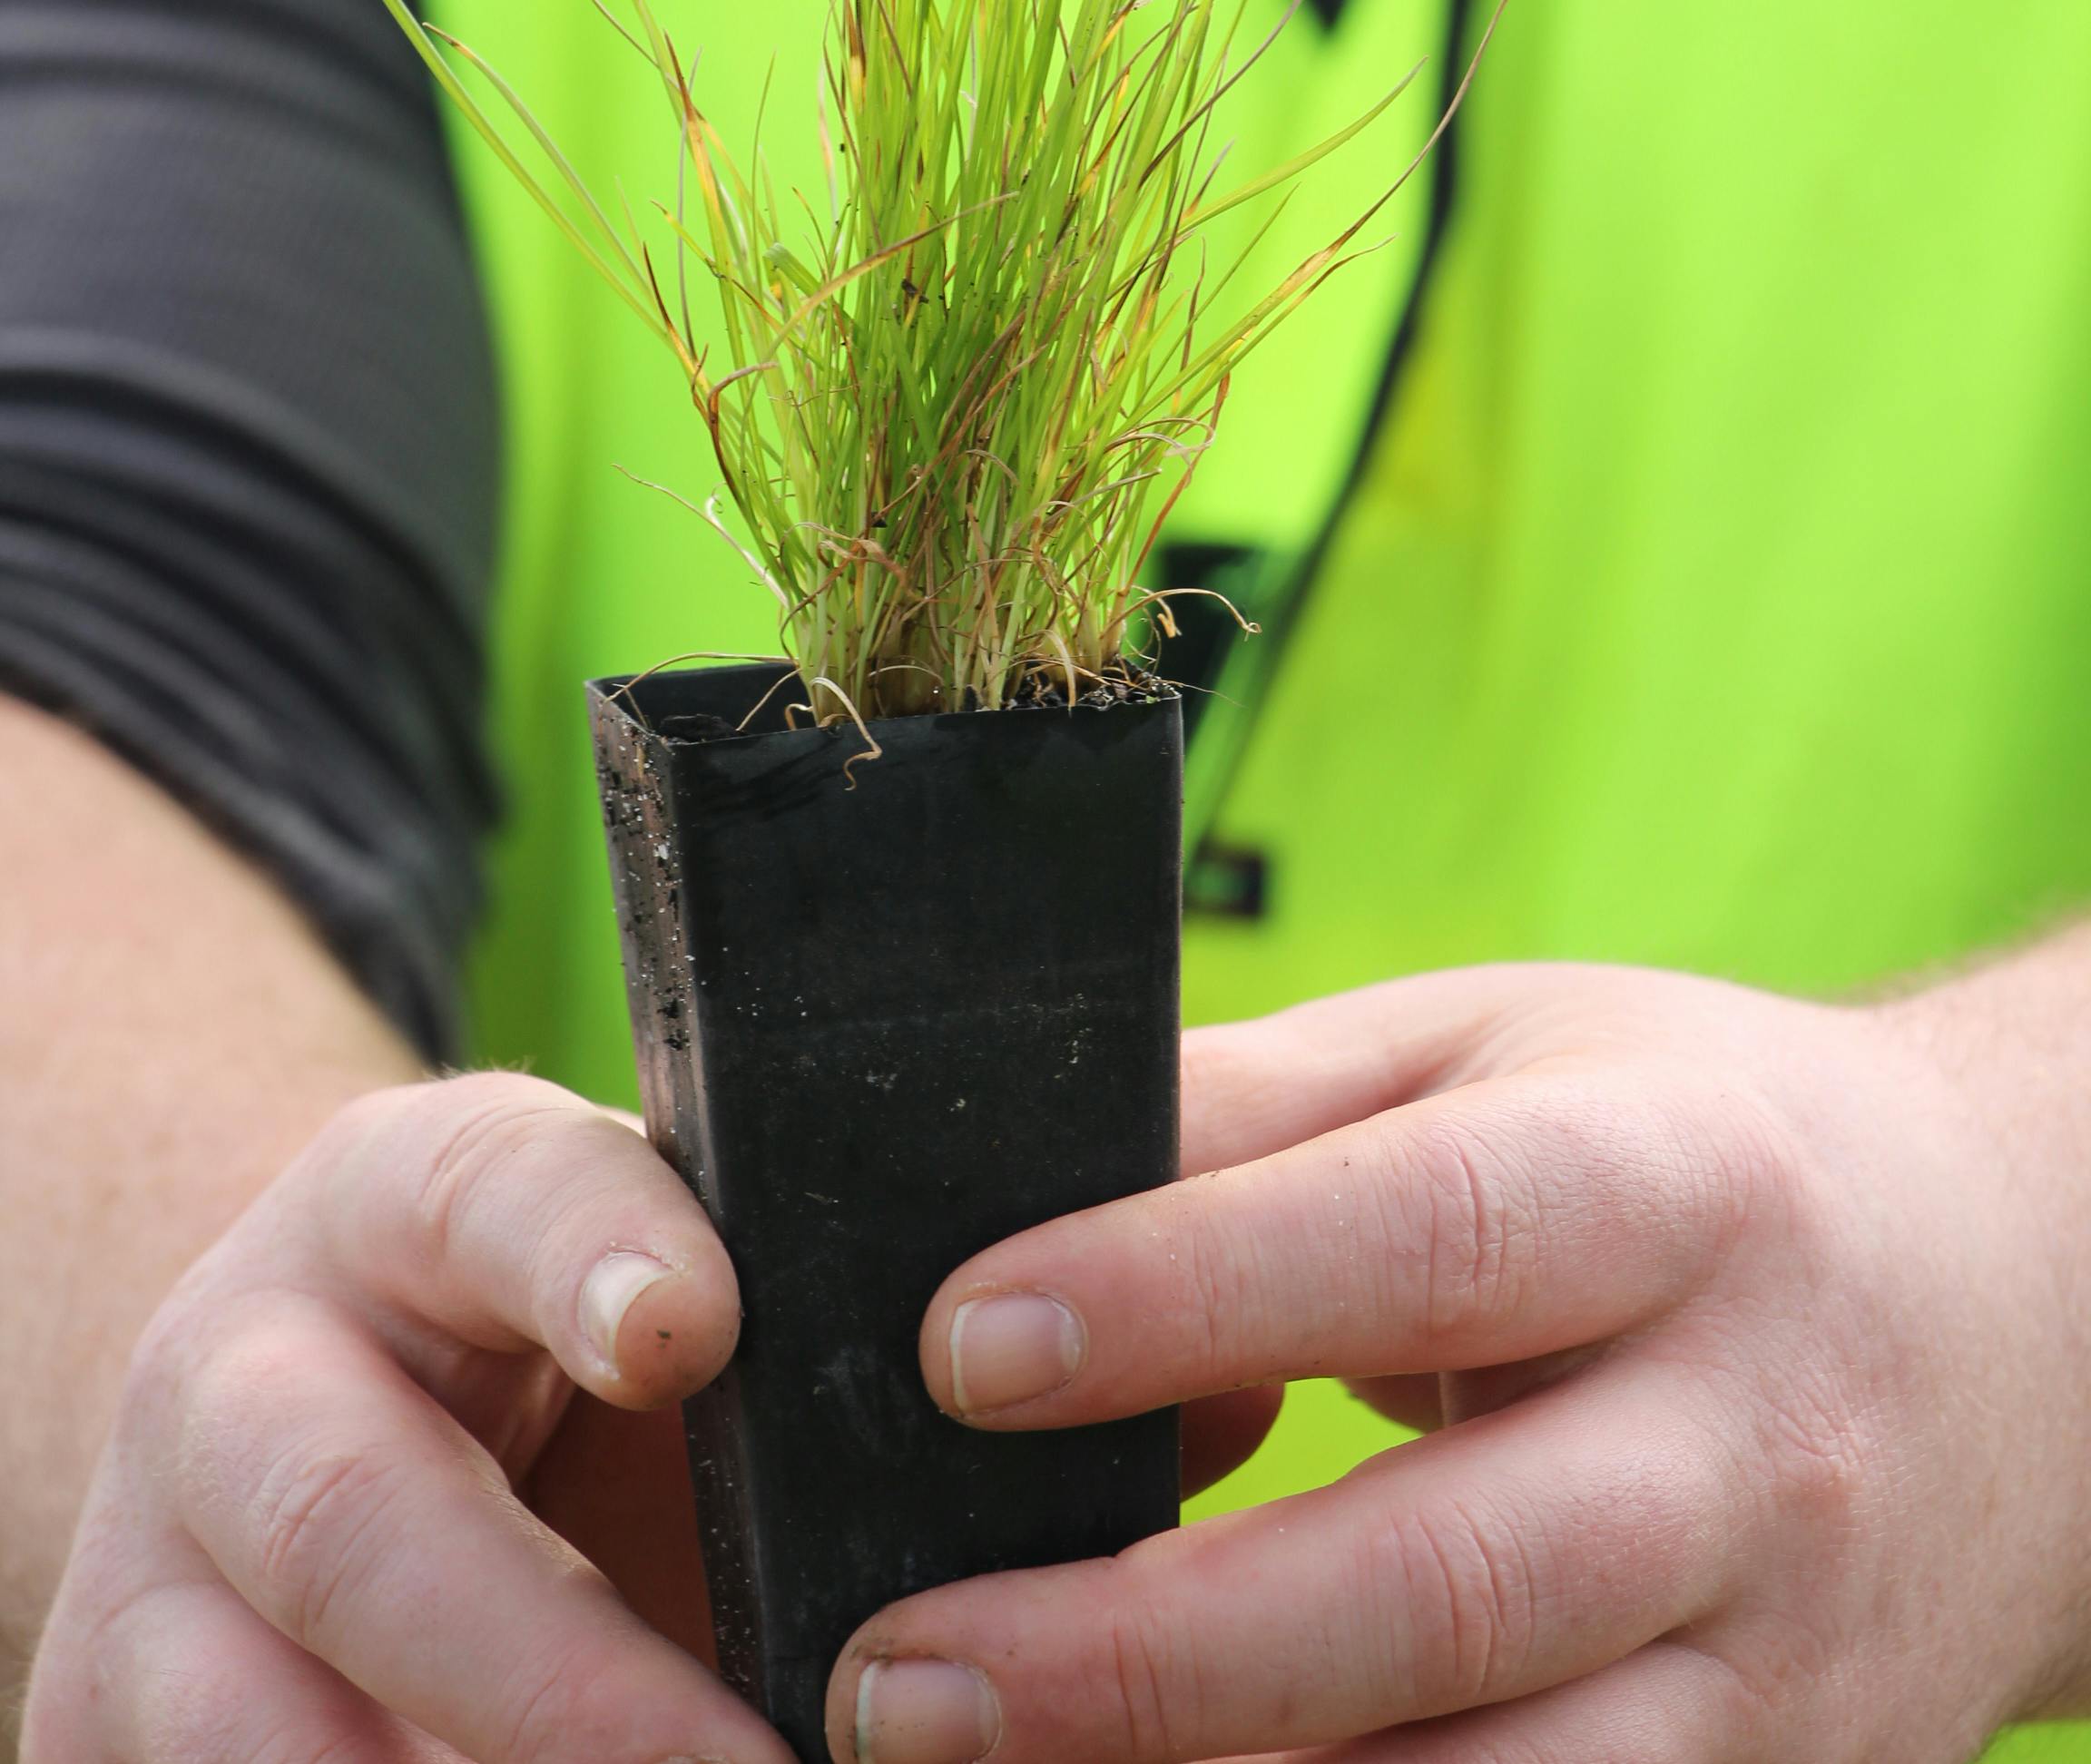 Den australske miljøorganisation Greenfleet planter træer som klimakompensation for CO2-udledning. Foto: Greenfleet Australia